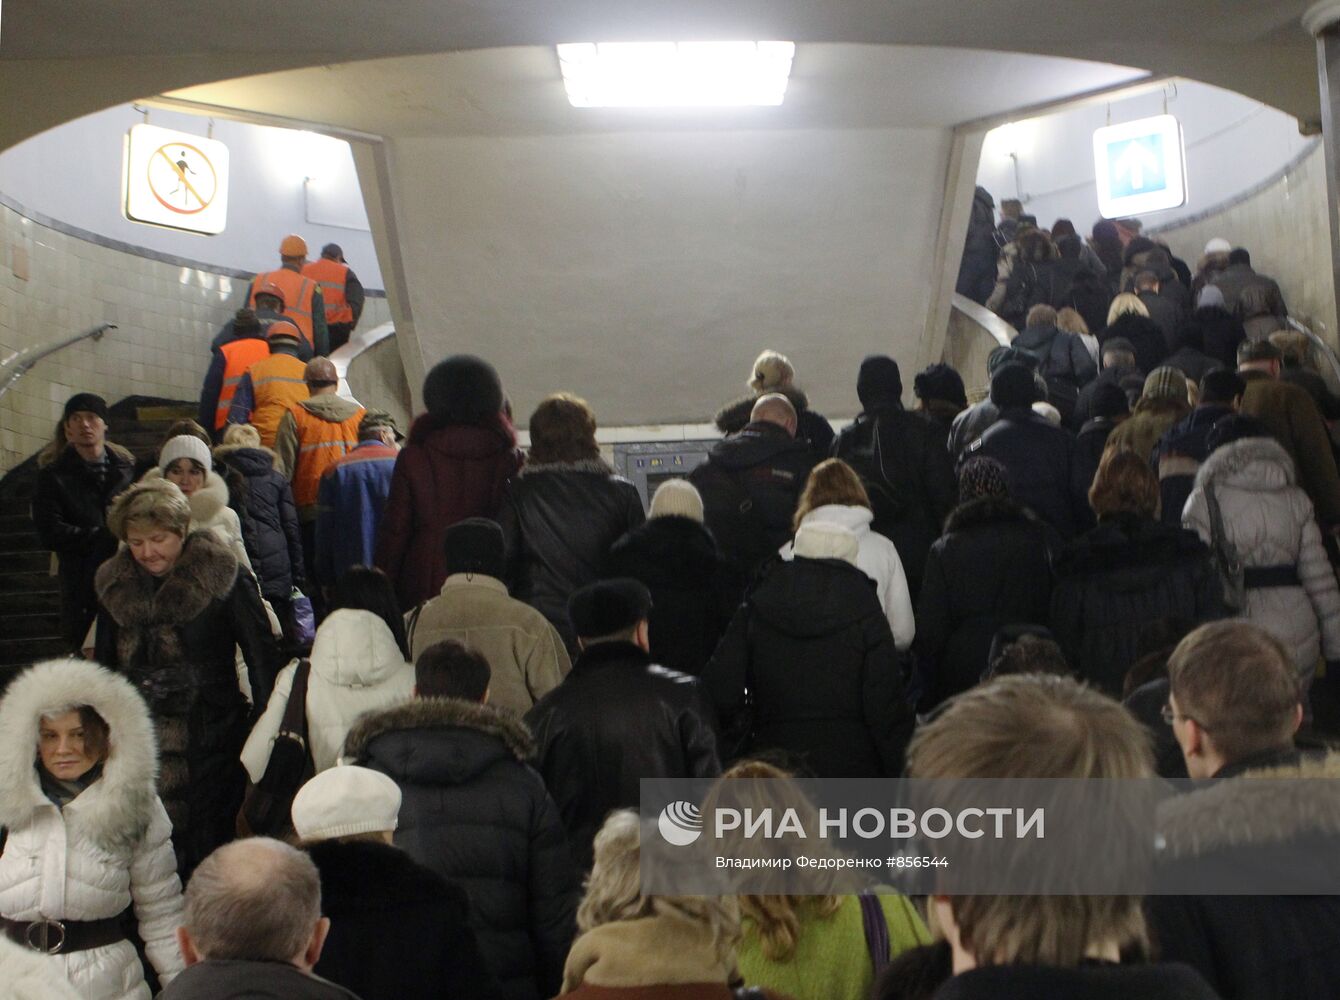 Пассажиры на станции метро "Парк культуры" Сокольнической линии